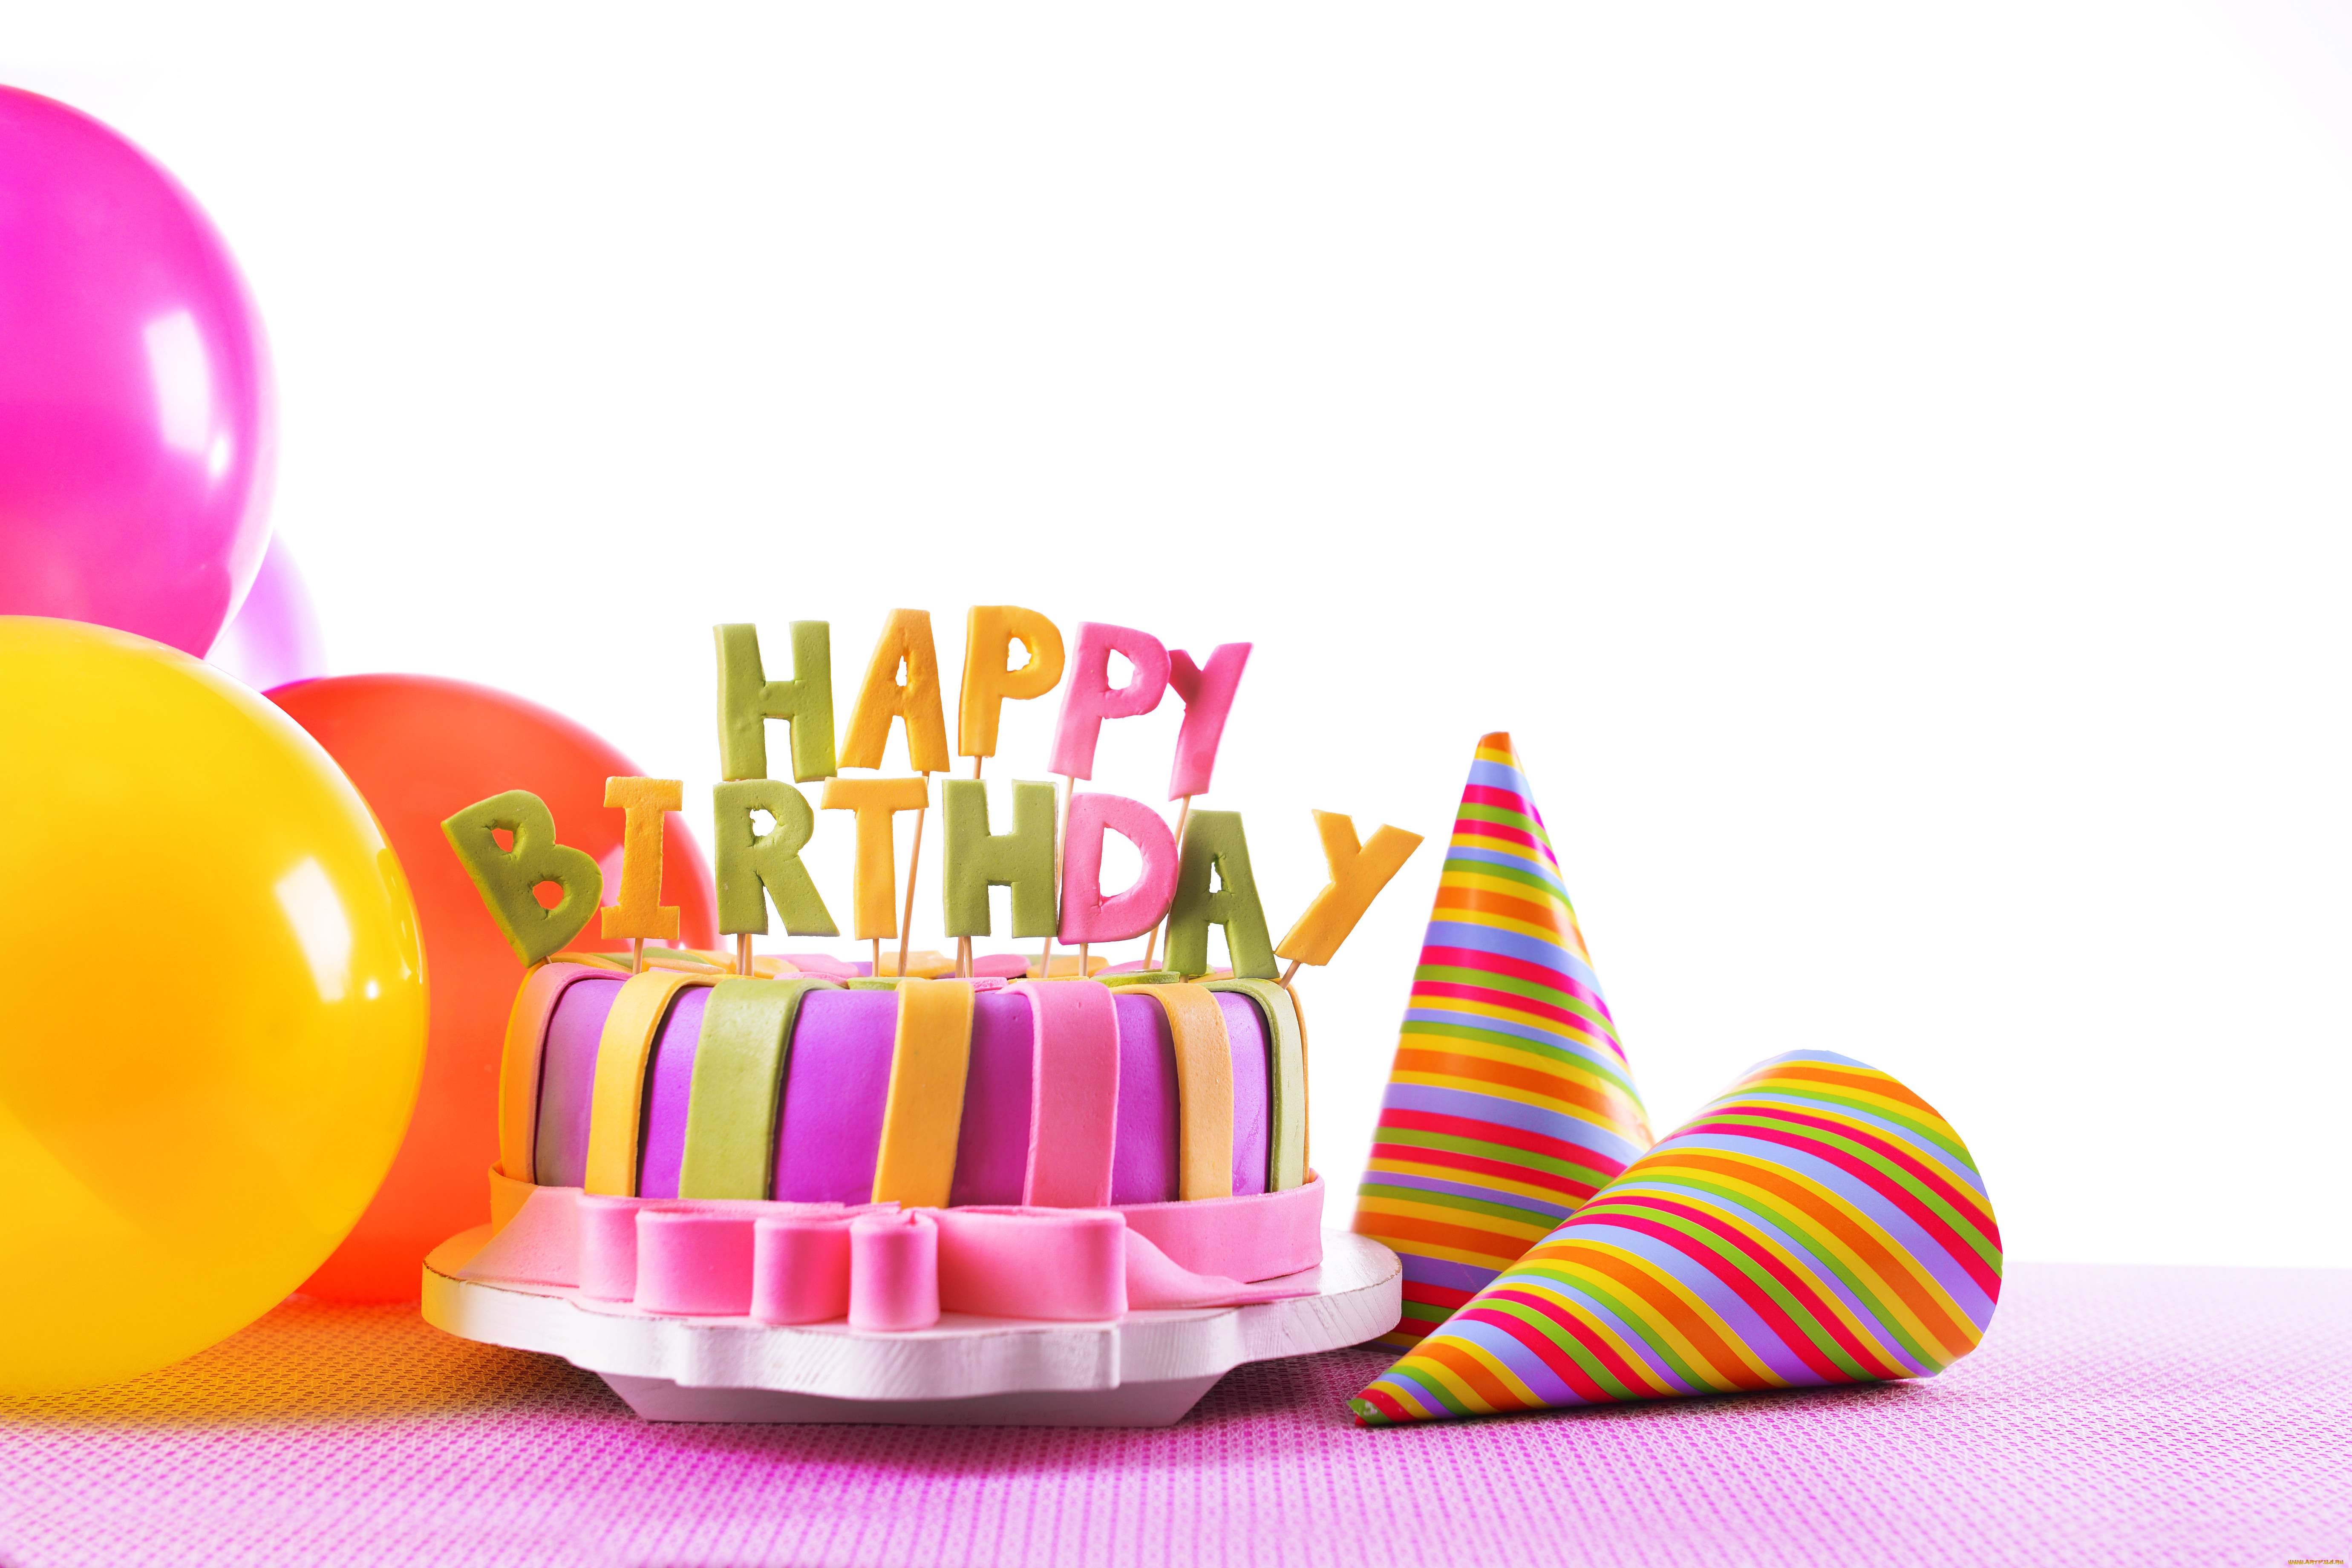 Счастливого дня рождения 3. С днем рождения. Тортик с днем рождения. Фон с днем рождения. С днём рождения КС тортиком.